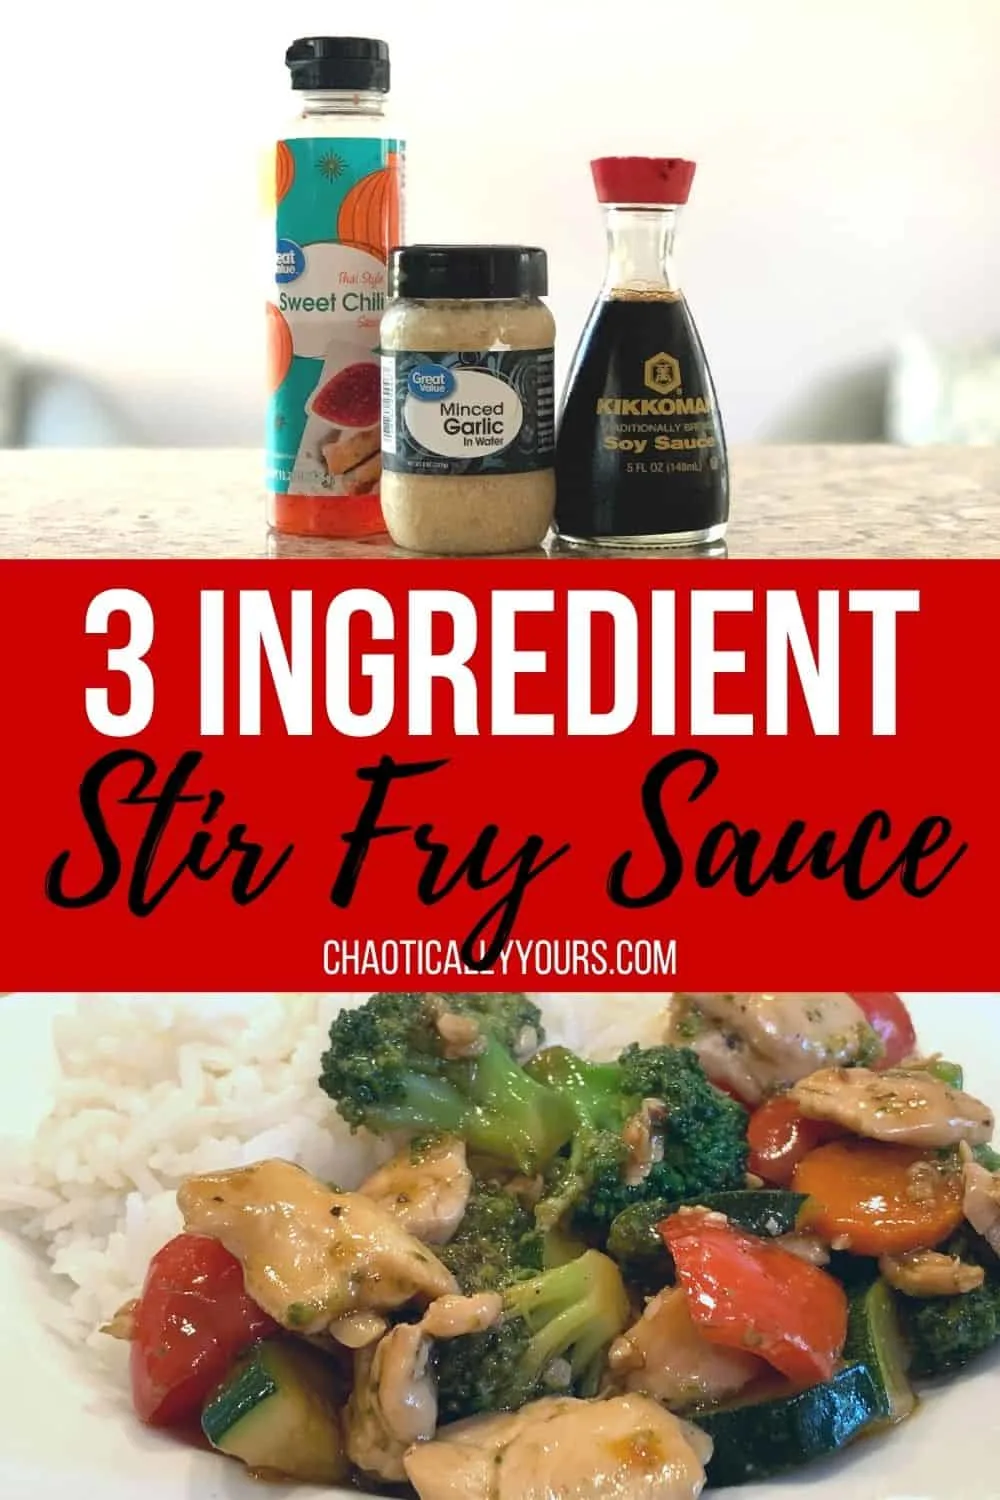 3 ingredient stir fry sauce pin image